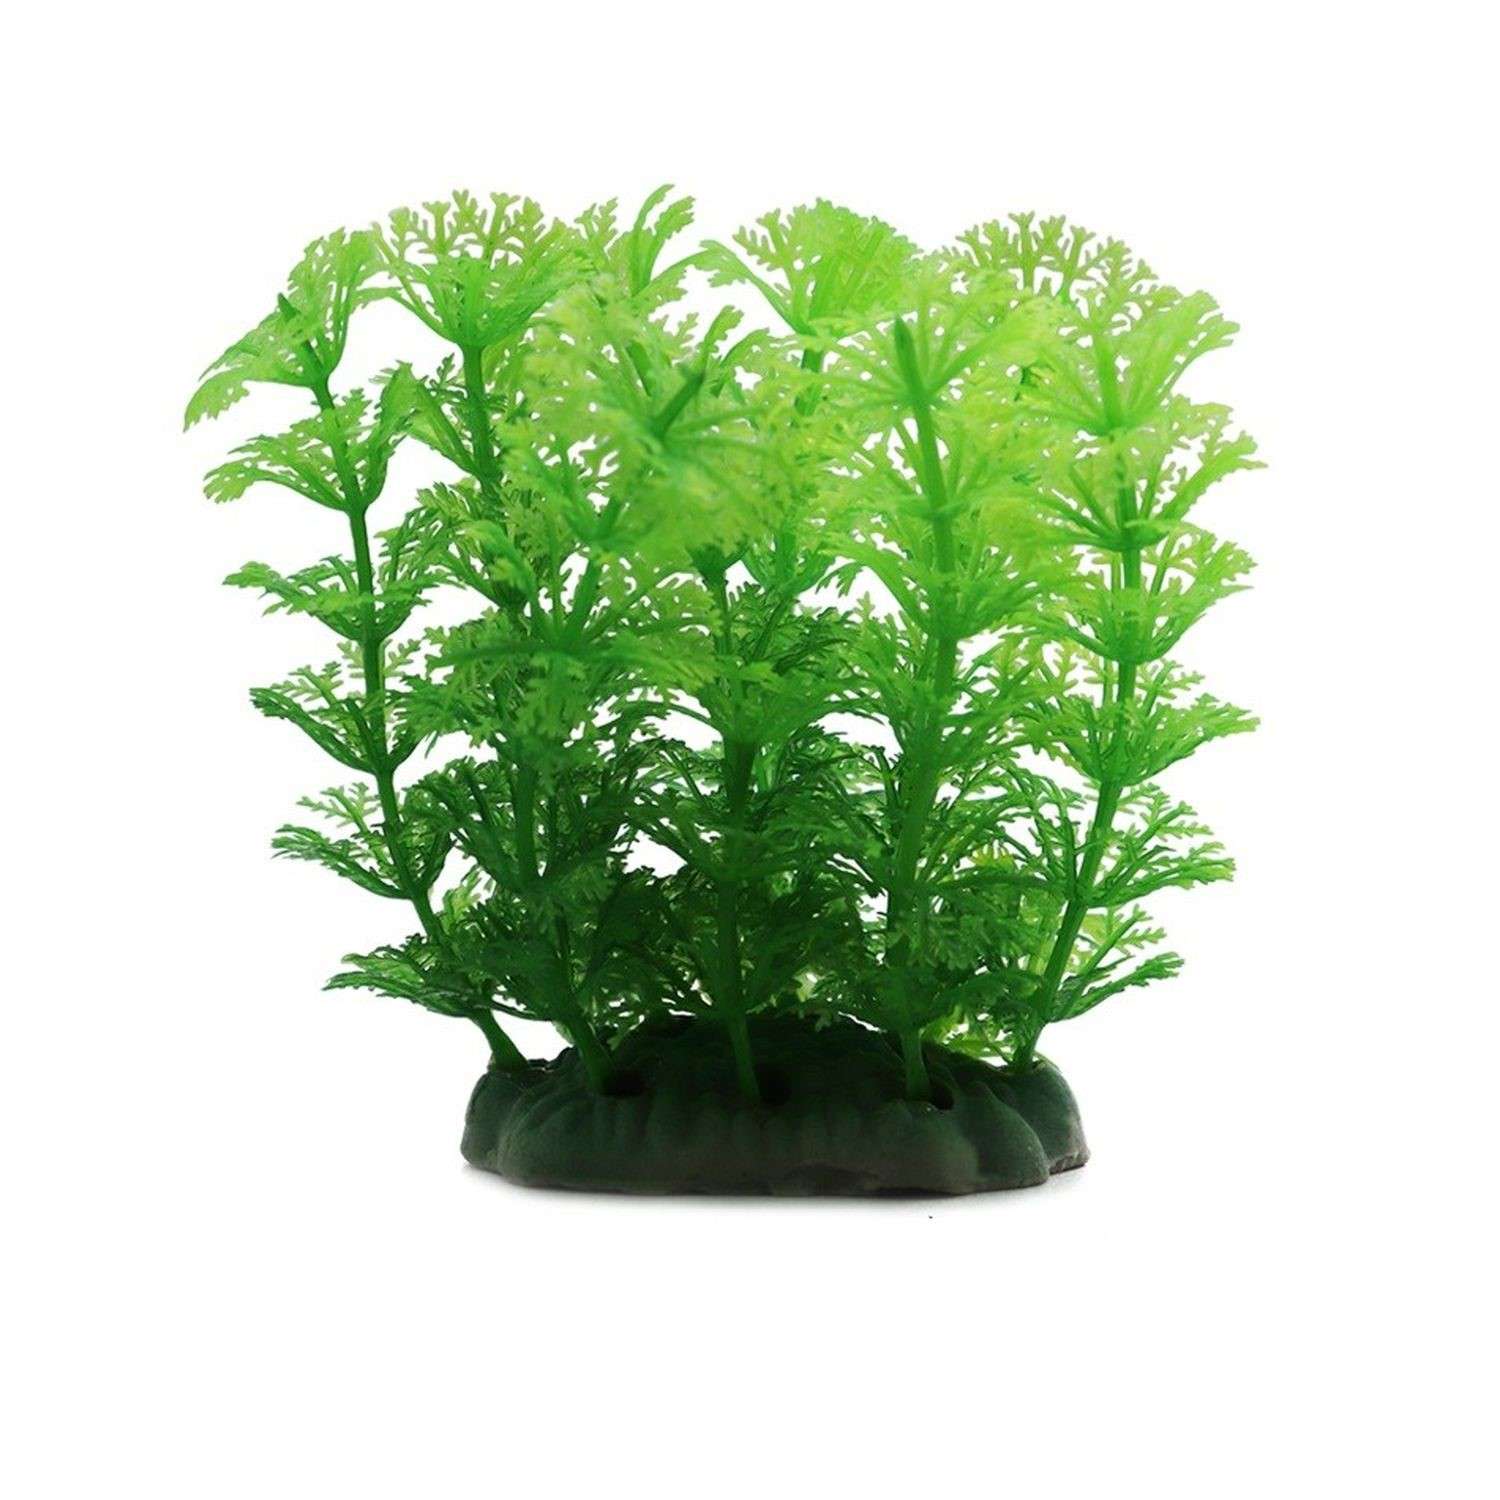 Аквариумное растение Rabizy искусственное Кустик 7х12 см - фото 1